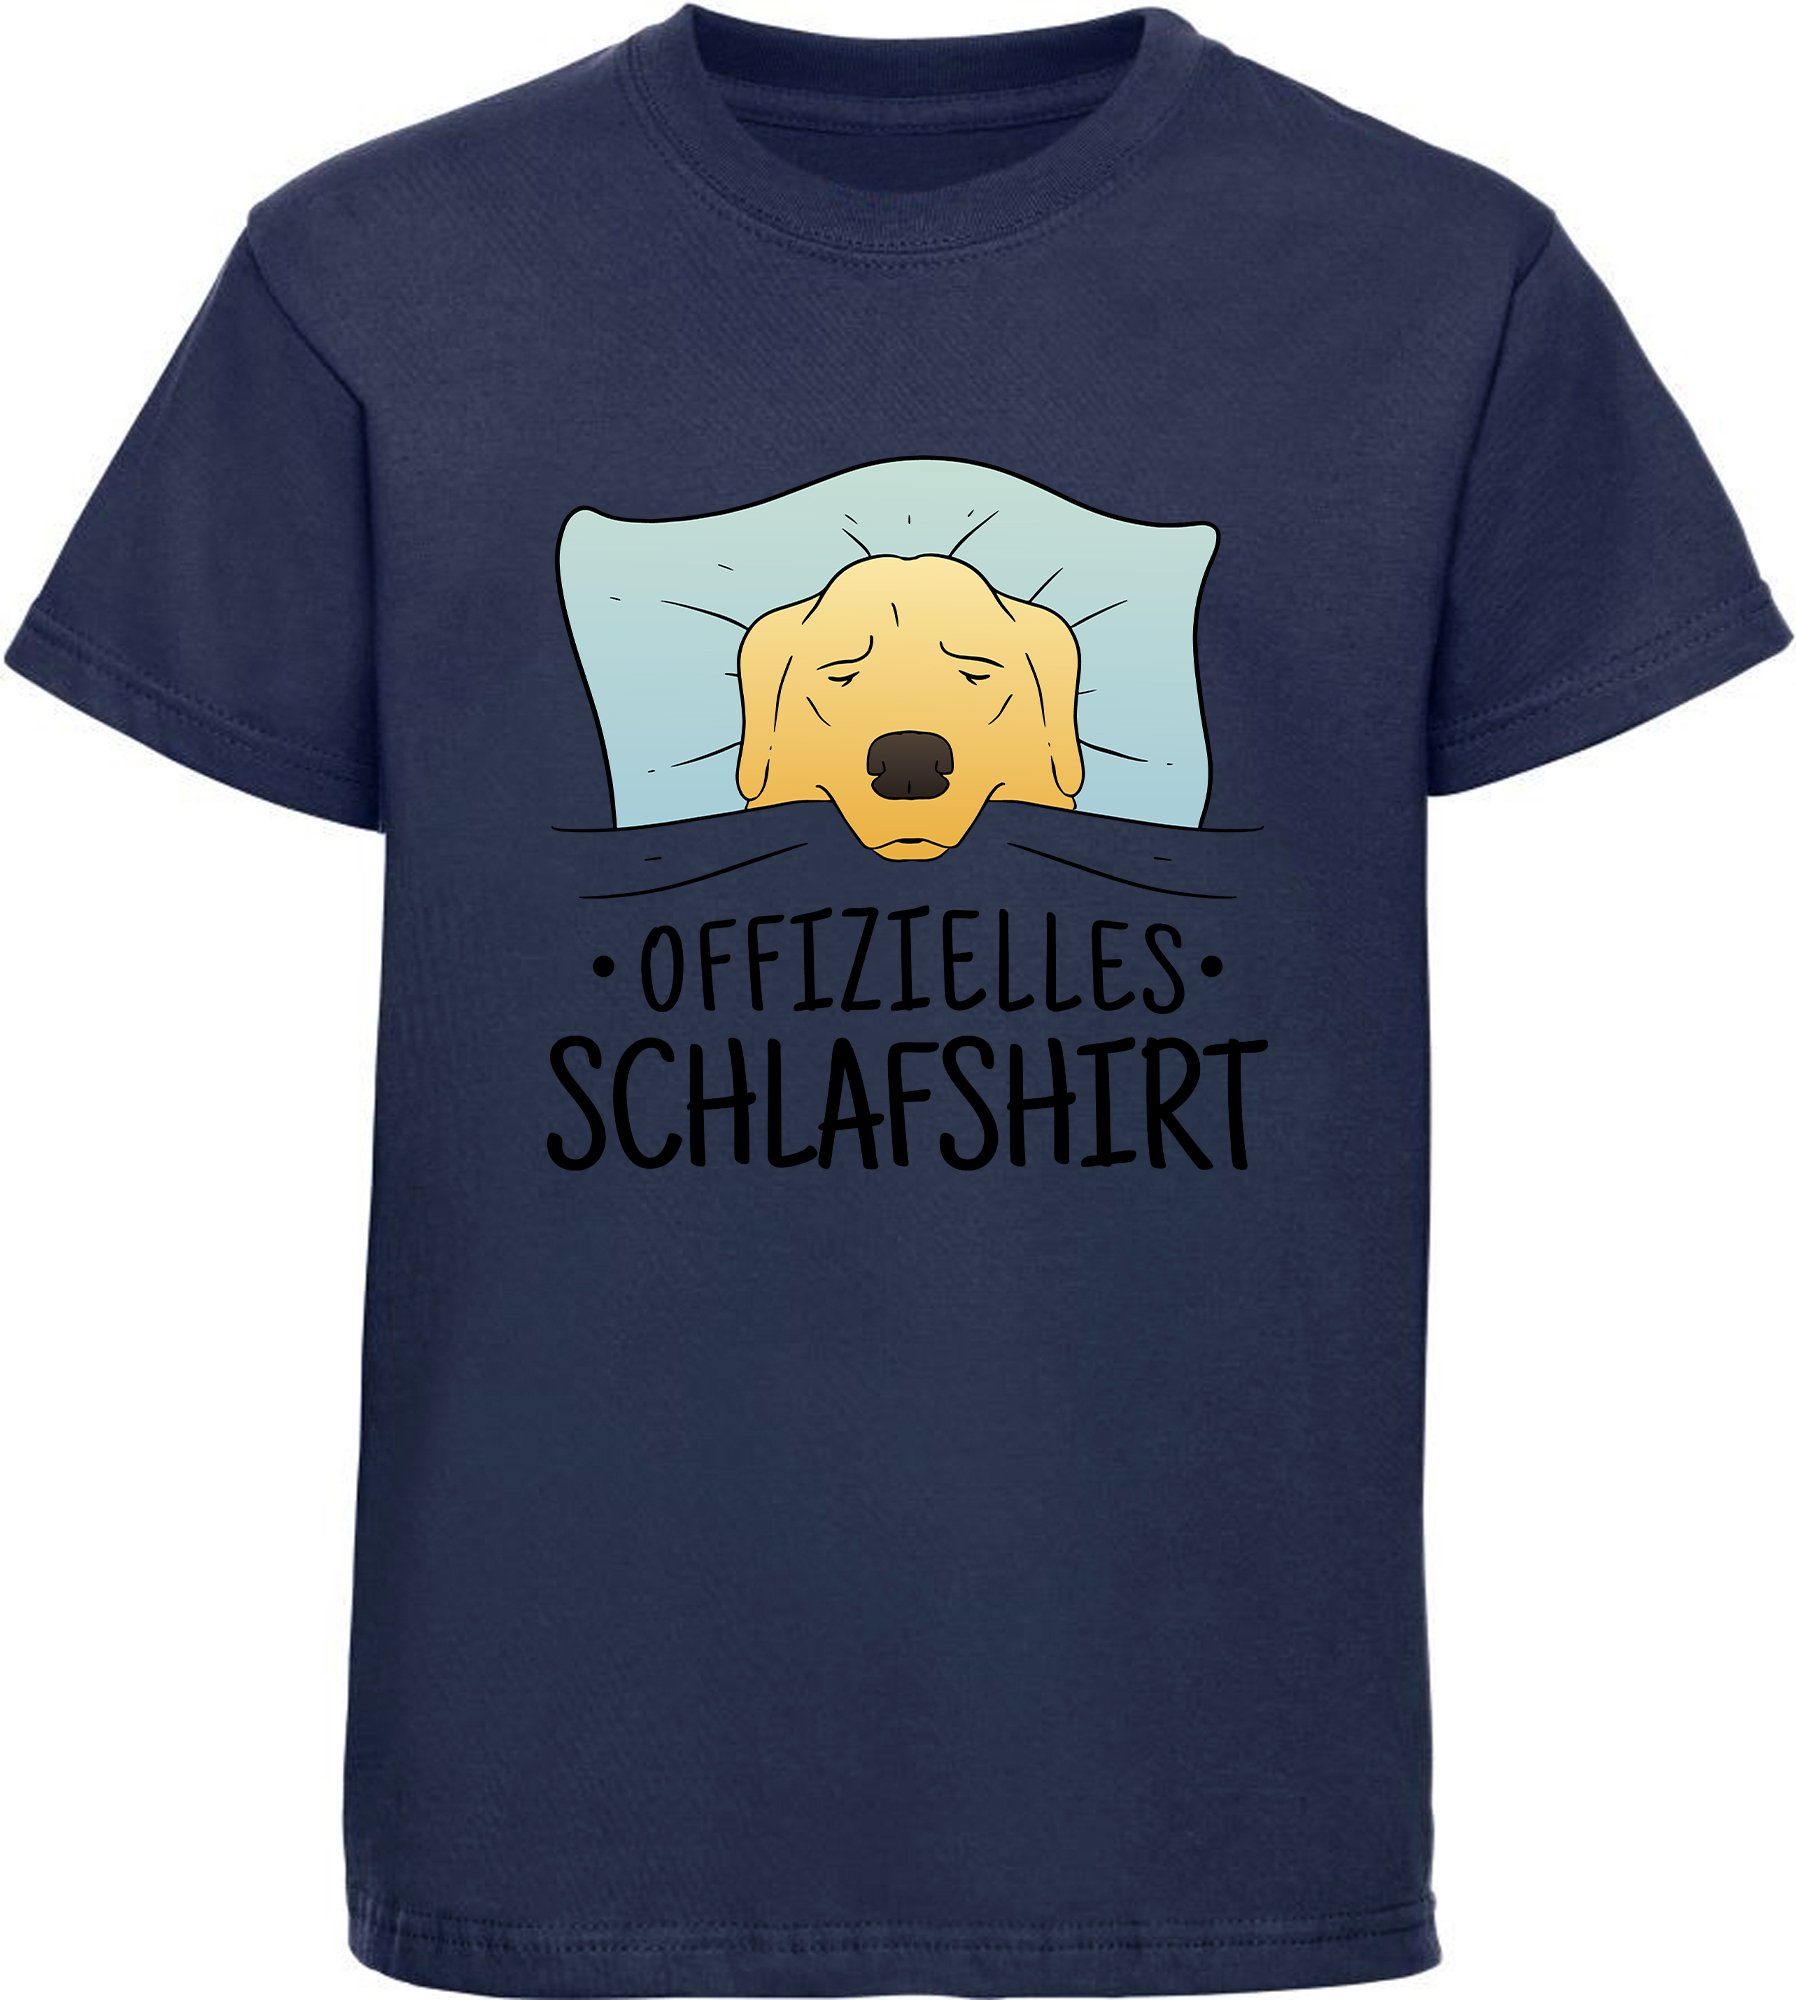 MyDesign24 T-Shirt Kinder Hunde Print Shirt bedruckt - Offizielles Schlafshirt Baumwollshirt mit Aufdruck, i247 navy blau